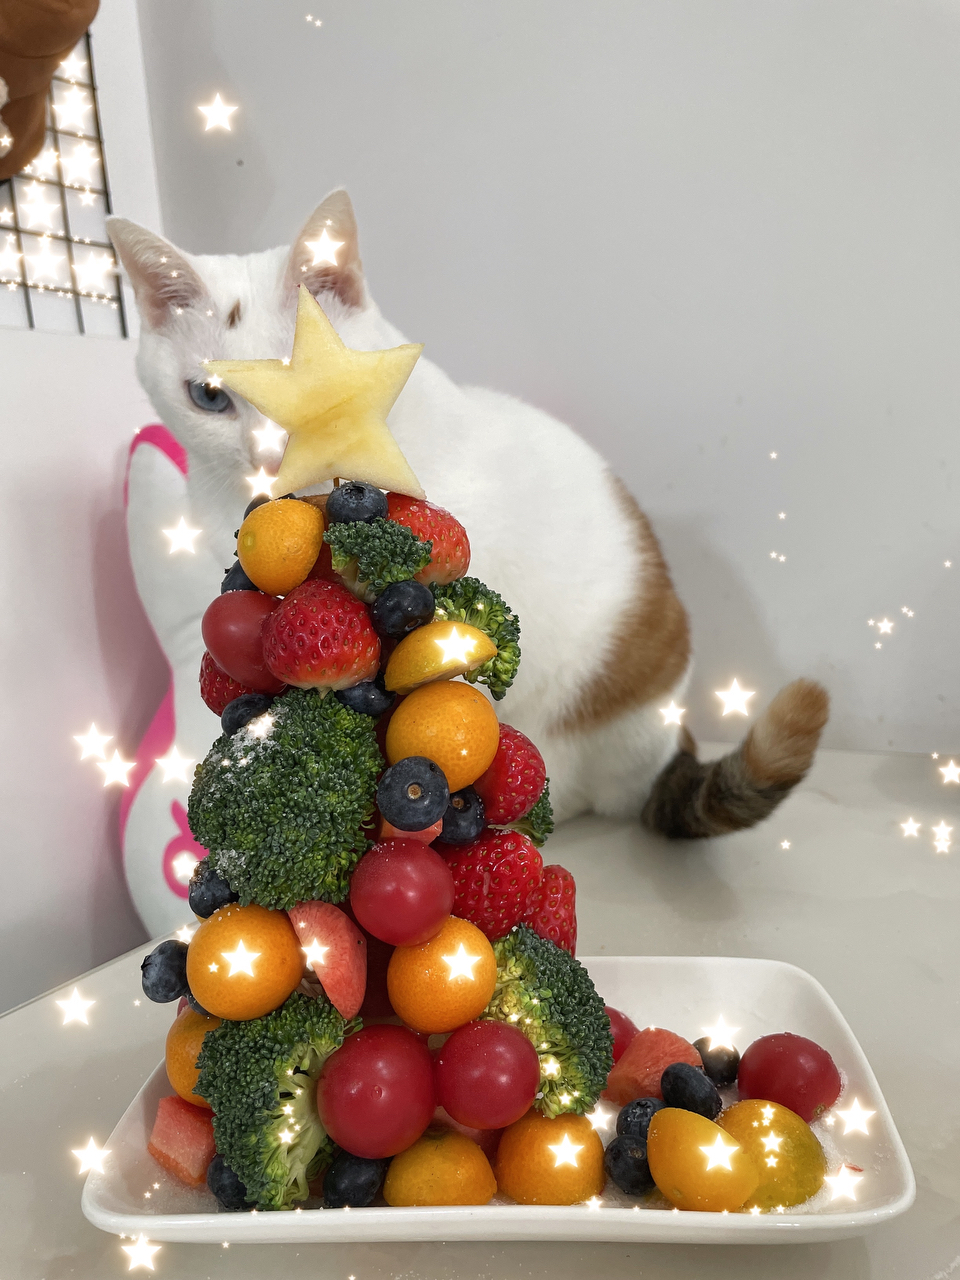 【🎄水果圣诞树】